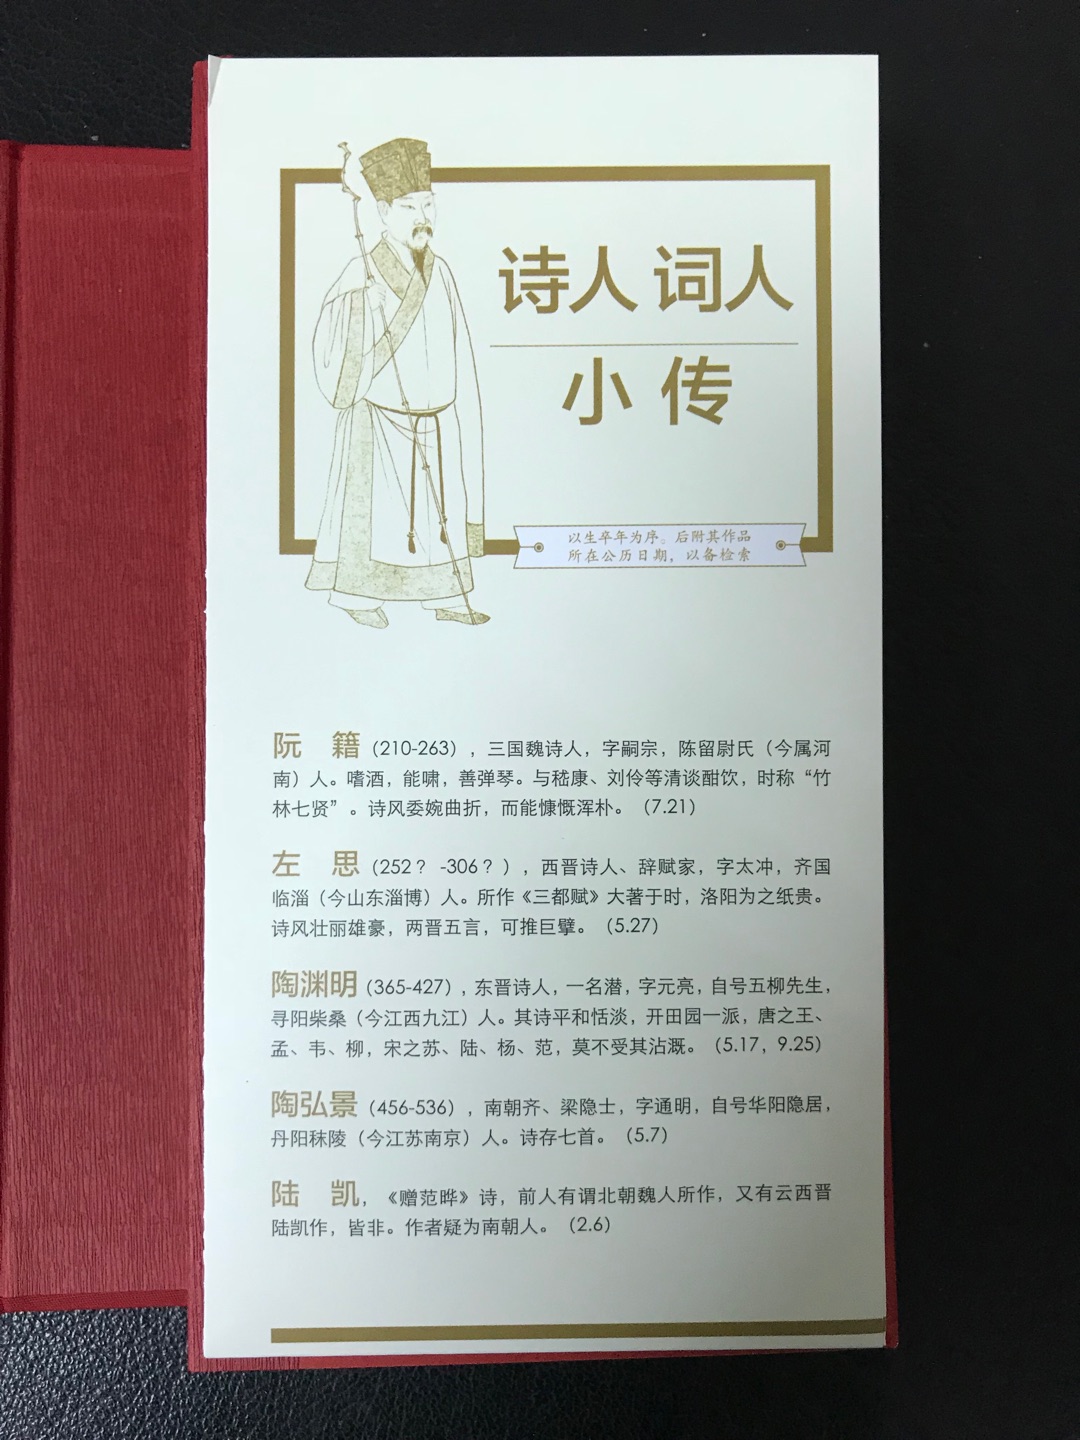 中华书局出版的《中华诗词日历》所附诗词均有简略解释、评介。对于初学者来说很有必要。另一个优点是附了一份诗人词人小传，使日历成为一本内容完整的诗词教科书手册。